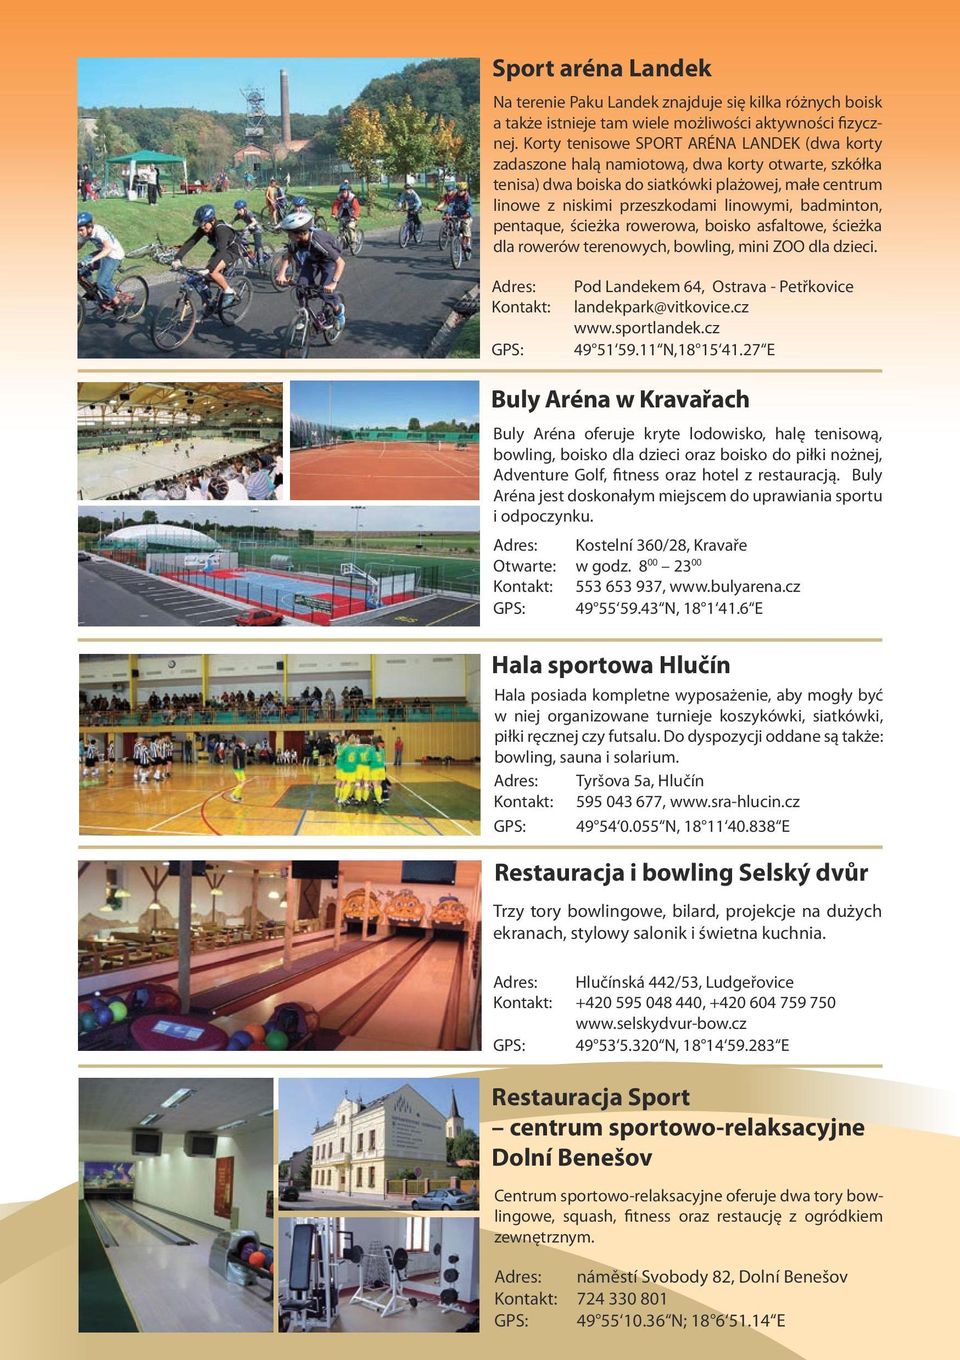 badminton, pentaque, ścieżka rowerowa, boisko asfaltowe, ścieżka dla rowerów terenowych, bowling, mini ZOO dla dzieci. Pod Landekem 64, Ostrava - Petřkovice landekpark@vitkovice.cz www.sportlandek.